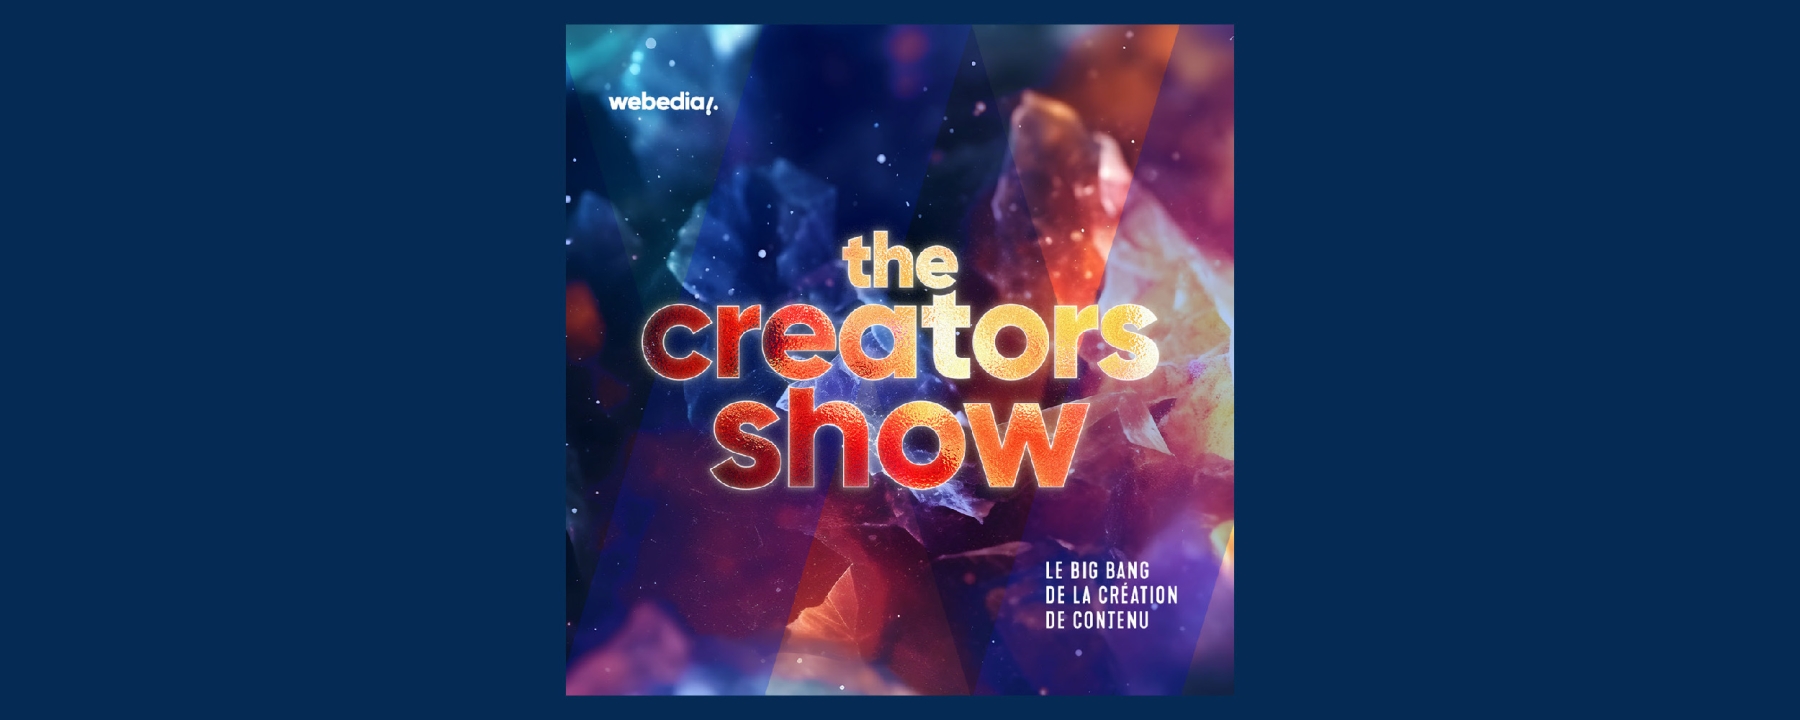 The Creators Show #2